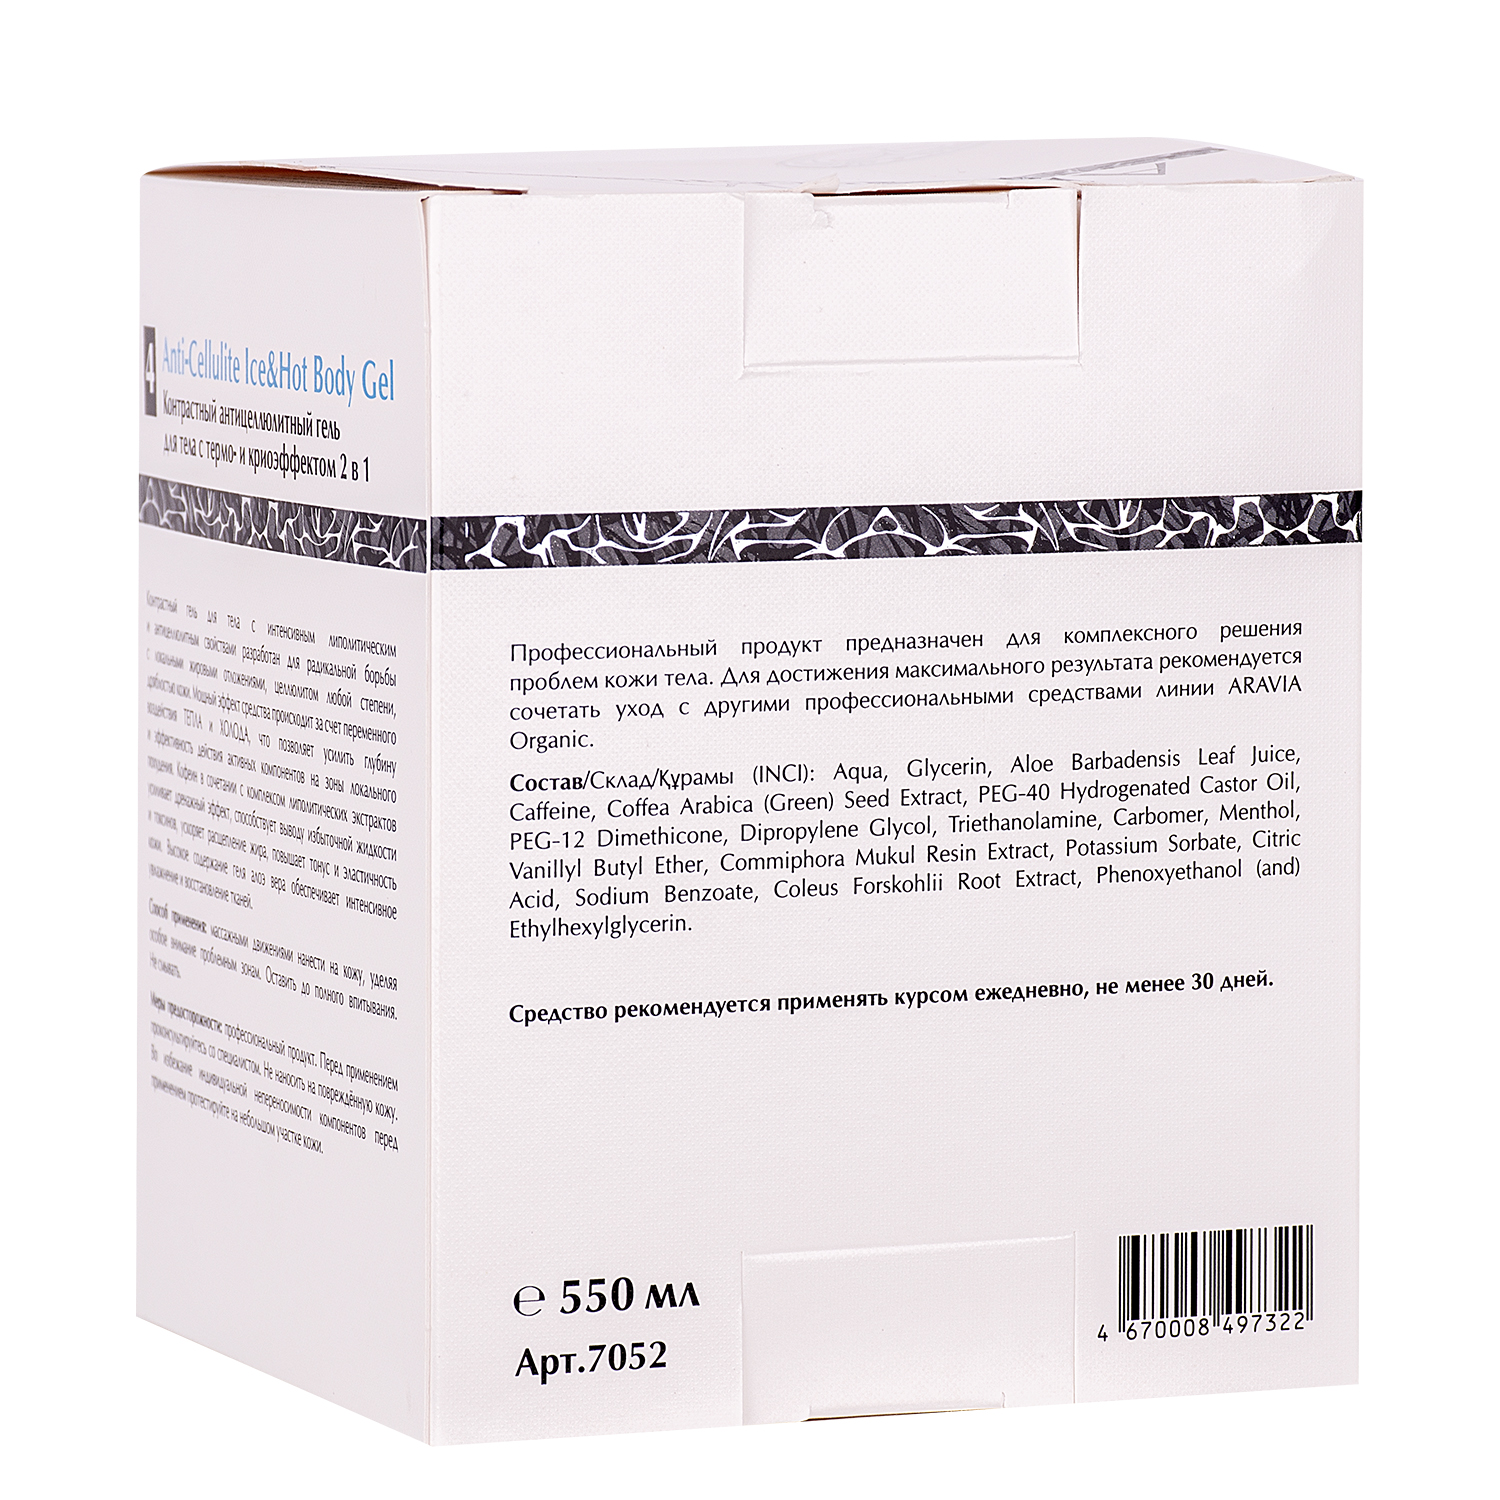 Контрастный антицеллюлитный гель для тела с термо и крио эффектом Anti-Cellulite Ice&Hot Body Gel, 550 мл,, ARAVIA Organic